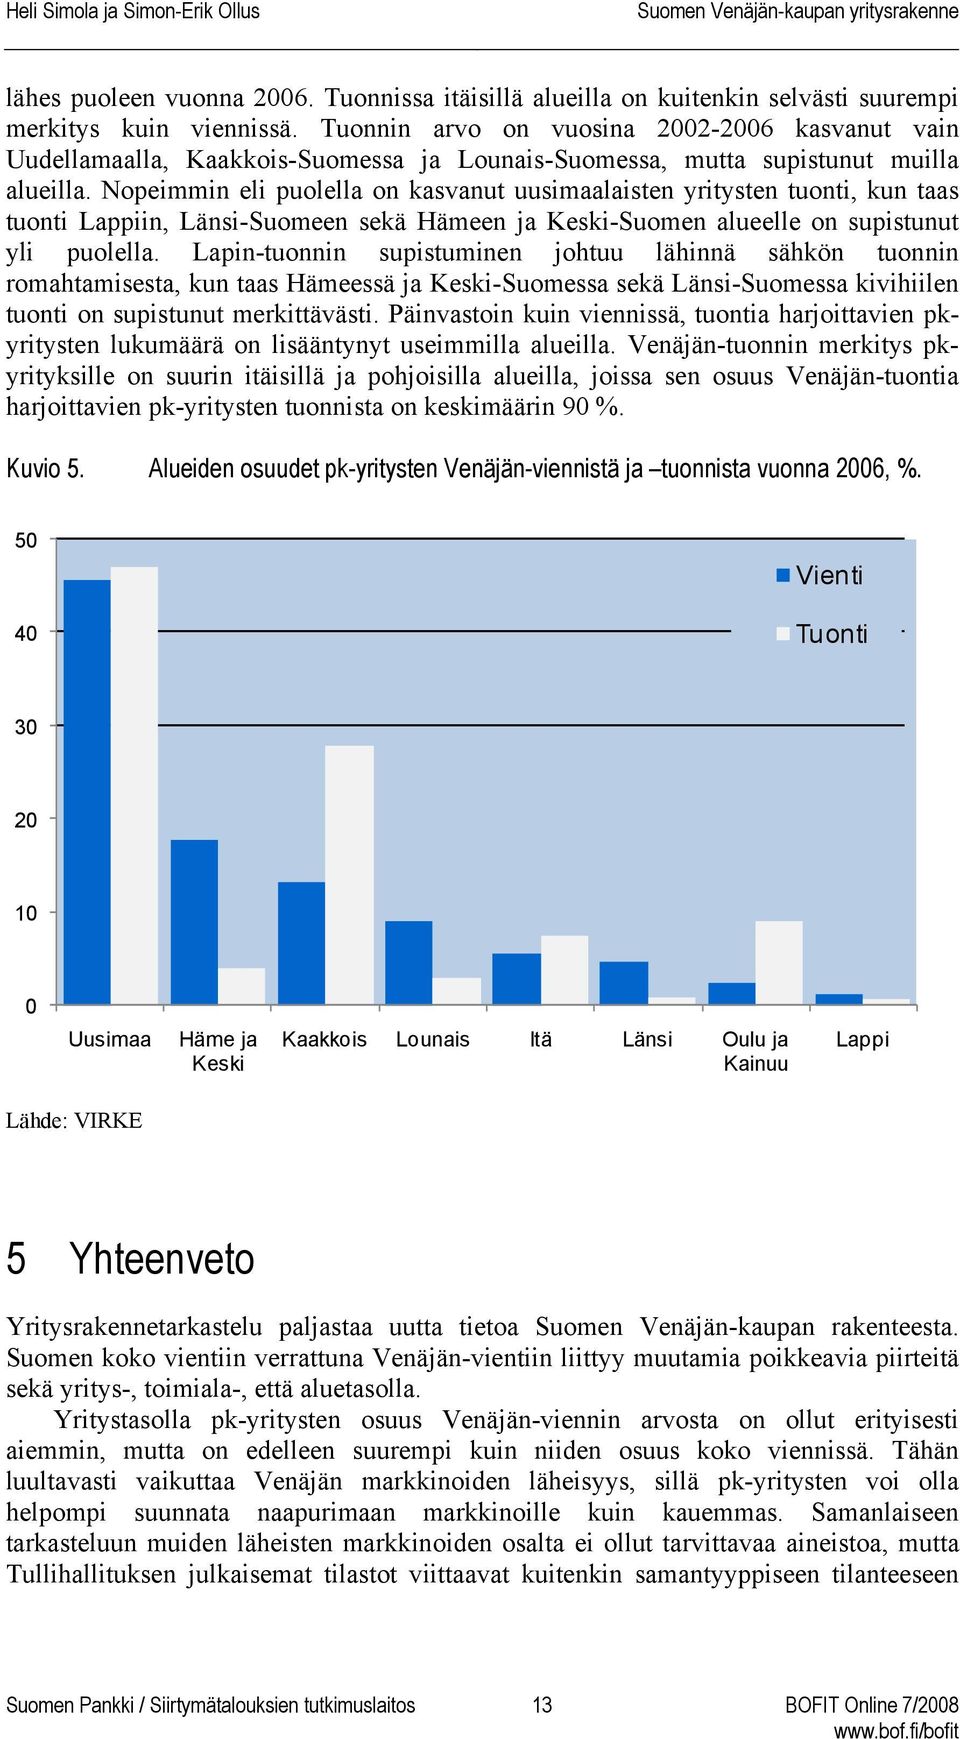 Nopeimmin eli puolella on kasvanut uusimaalaisten yritysten tuonti, kun taas tuonti Lappiin, Länsi-Suomeen sekä Hämeen ja Keski-Suomen alueelle on supistunut yli puolella.